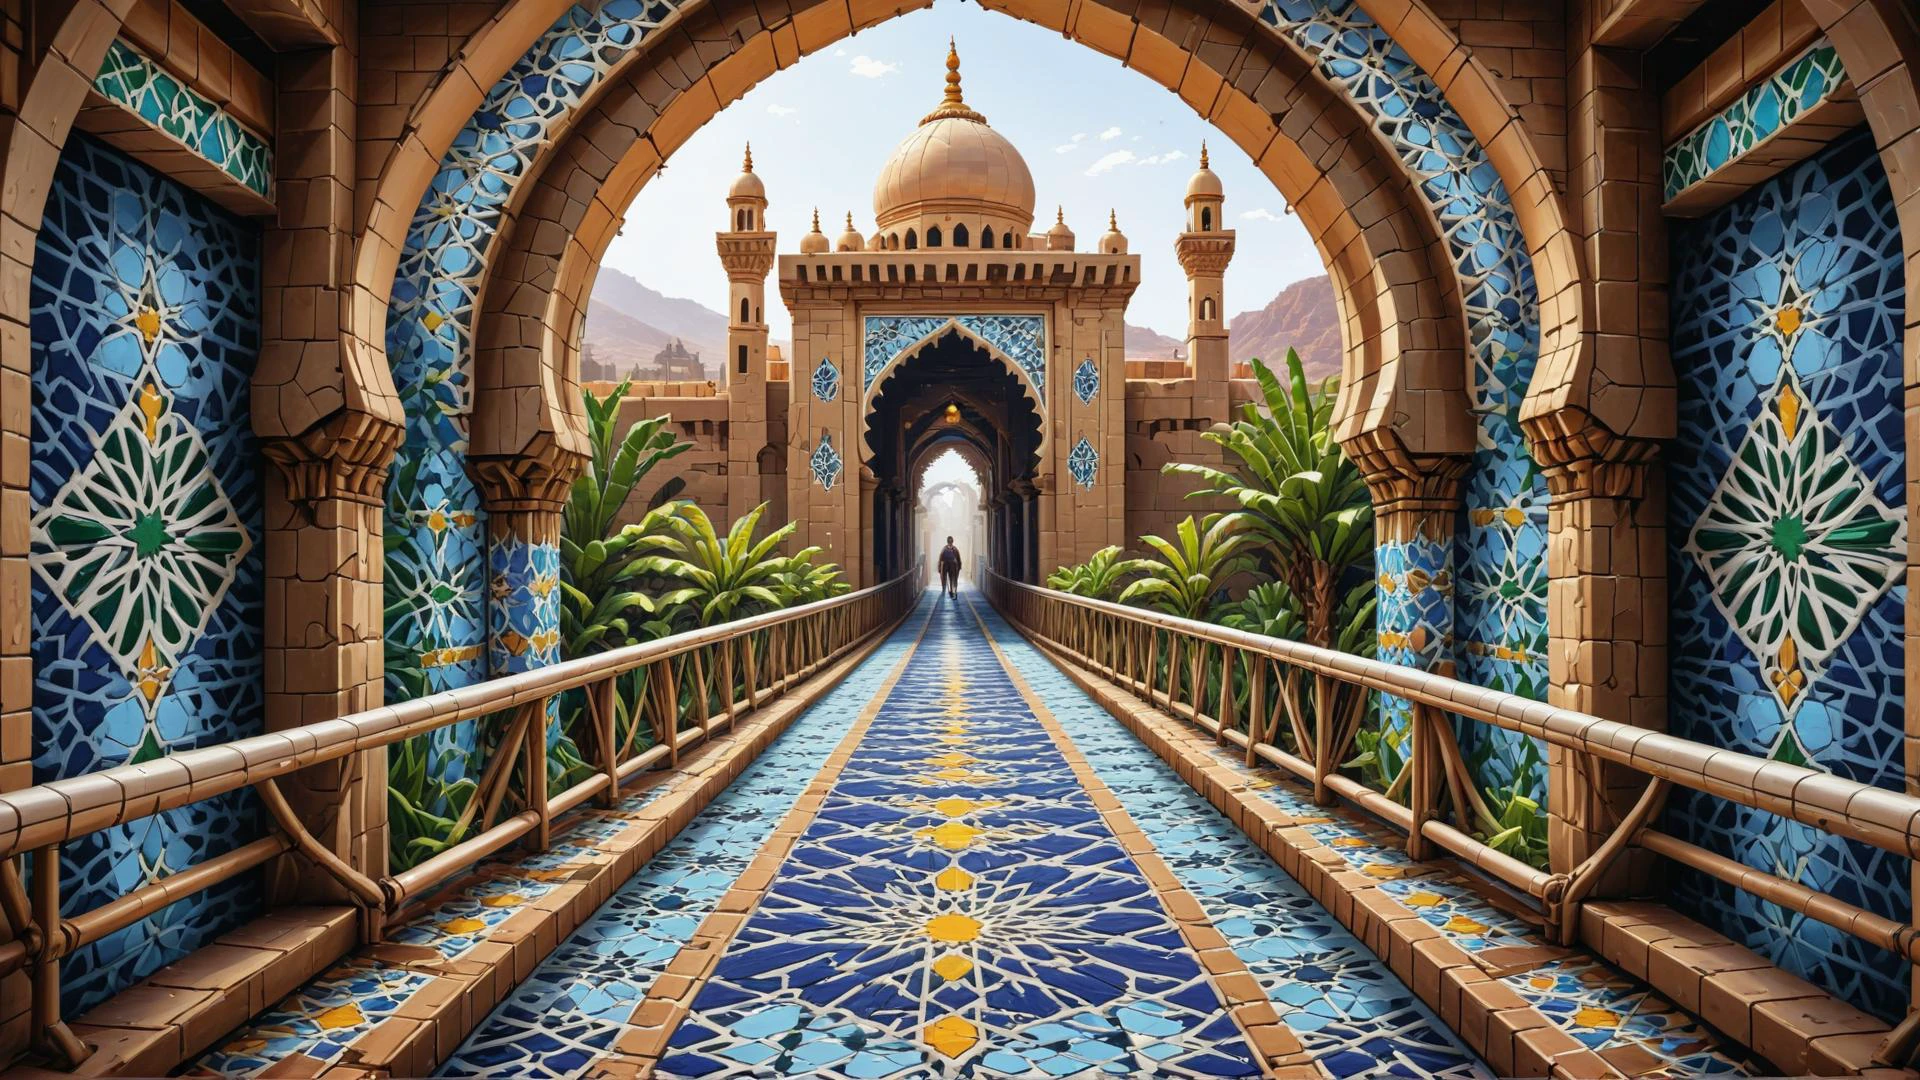 مفهوم عالم الفن, com.pixabay, تقرير التنمية البشرية, تباين عالي, أجنبي مغربي من داخل جسر المشاة, أسلوب معقد للغاية, الفائز في المسابقة, خلفية بيضاء واضحة, فن البكسل zlj-xl